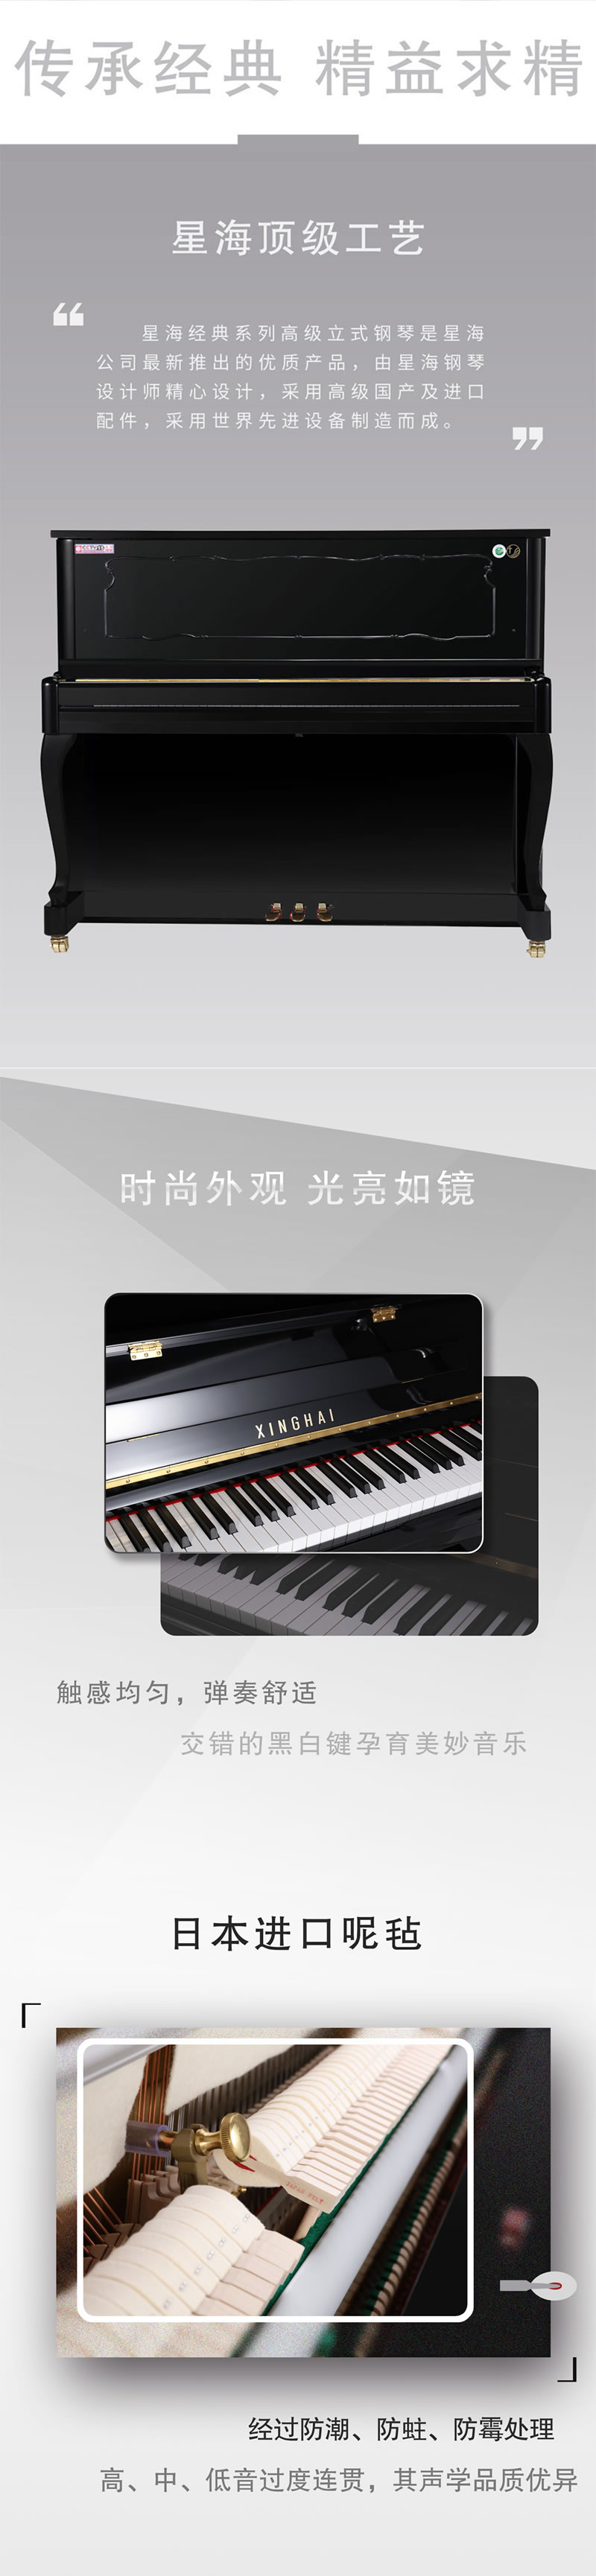 星海钢琴全新标准立式88键XU-125BJ